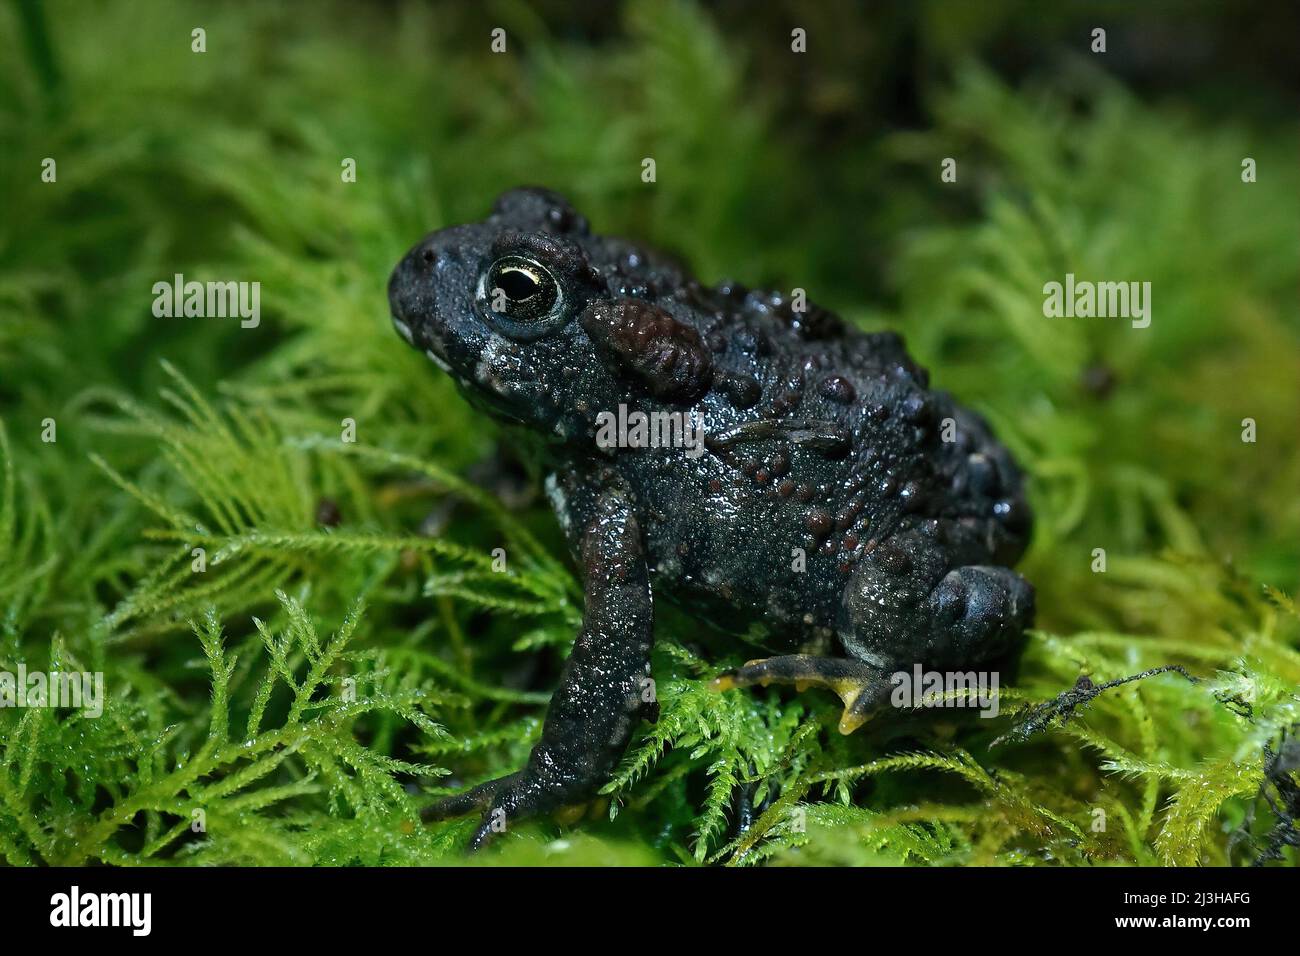 Primo piano su un giovane toad occidentale di colore scuro, Anaxyrus boreas seduto su muschio verde di notte Foto Stock